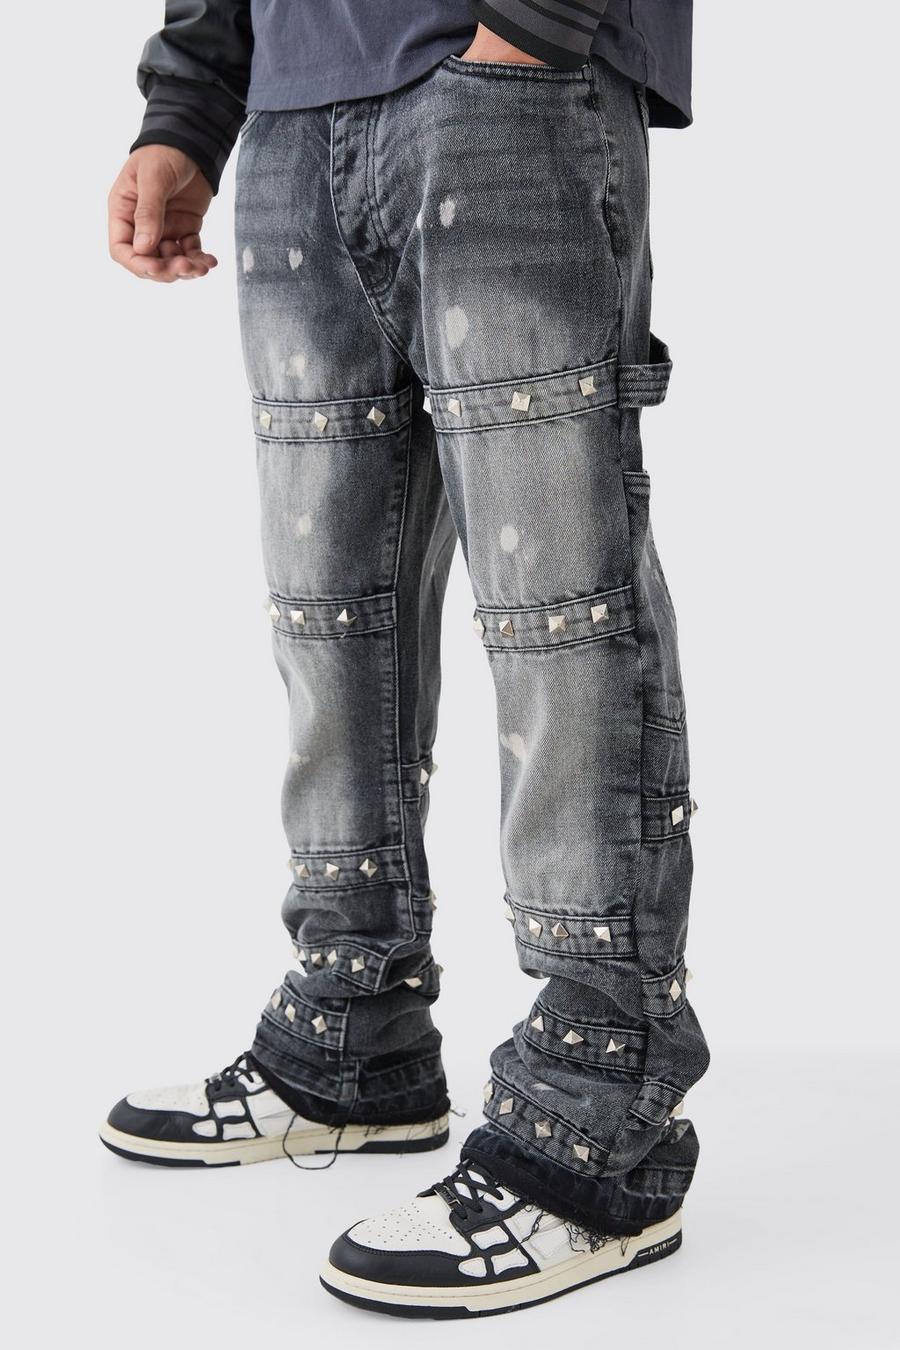 Jeans Tall Slim Fit in denim rigido decorato con fascette a zampa, Charcoal